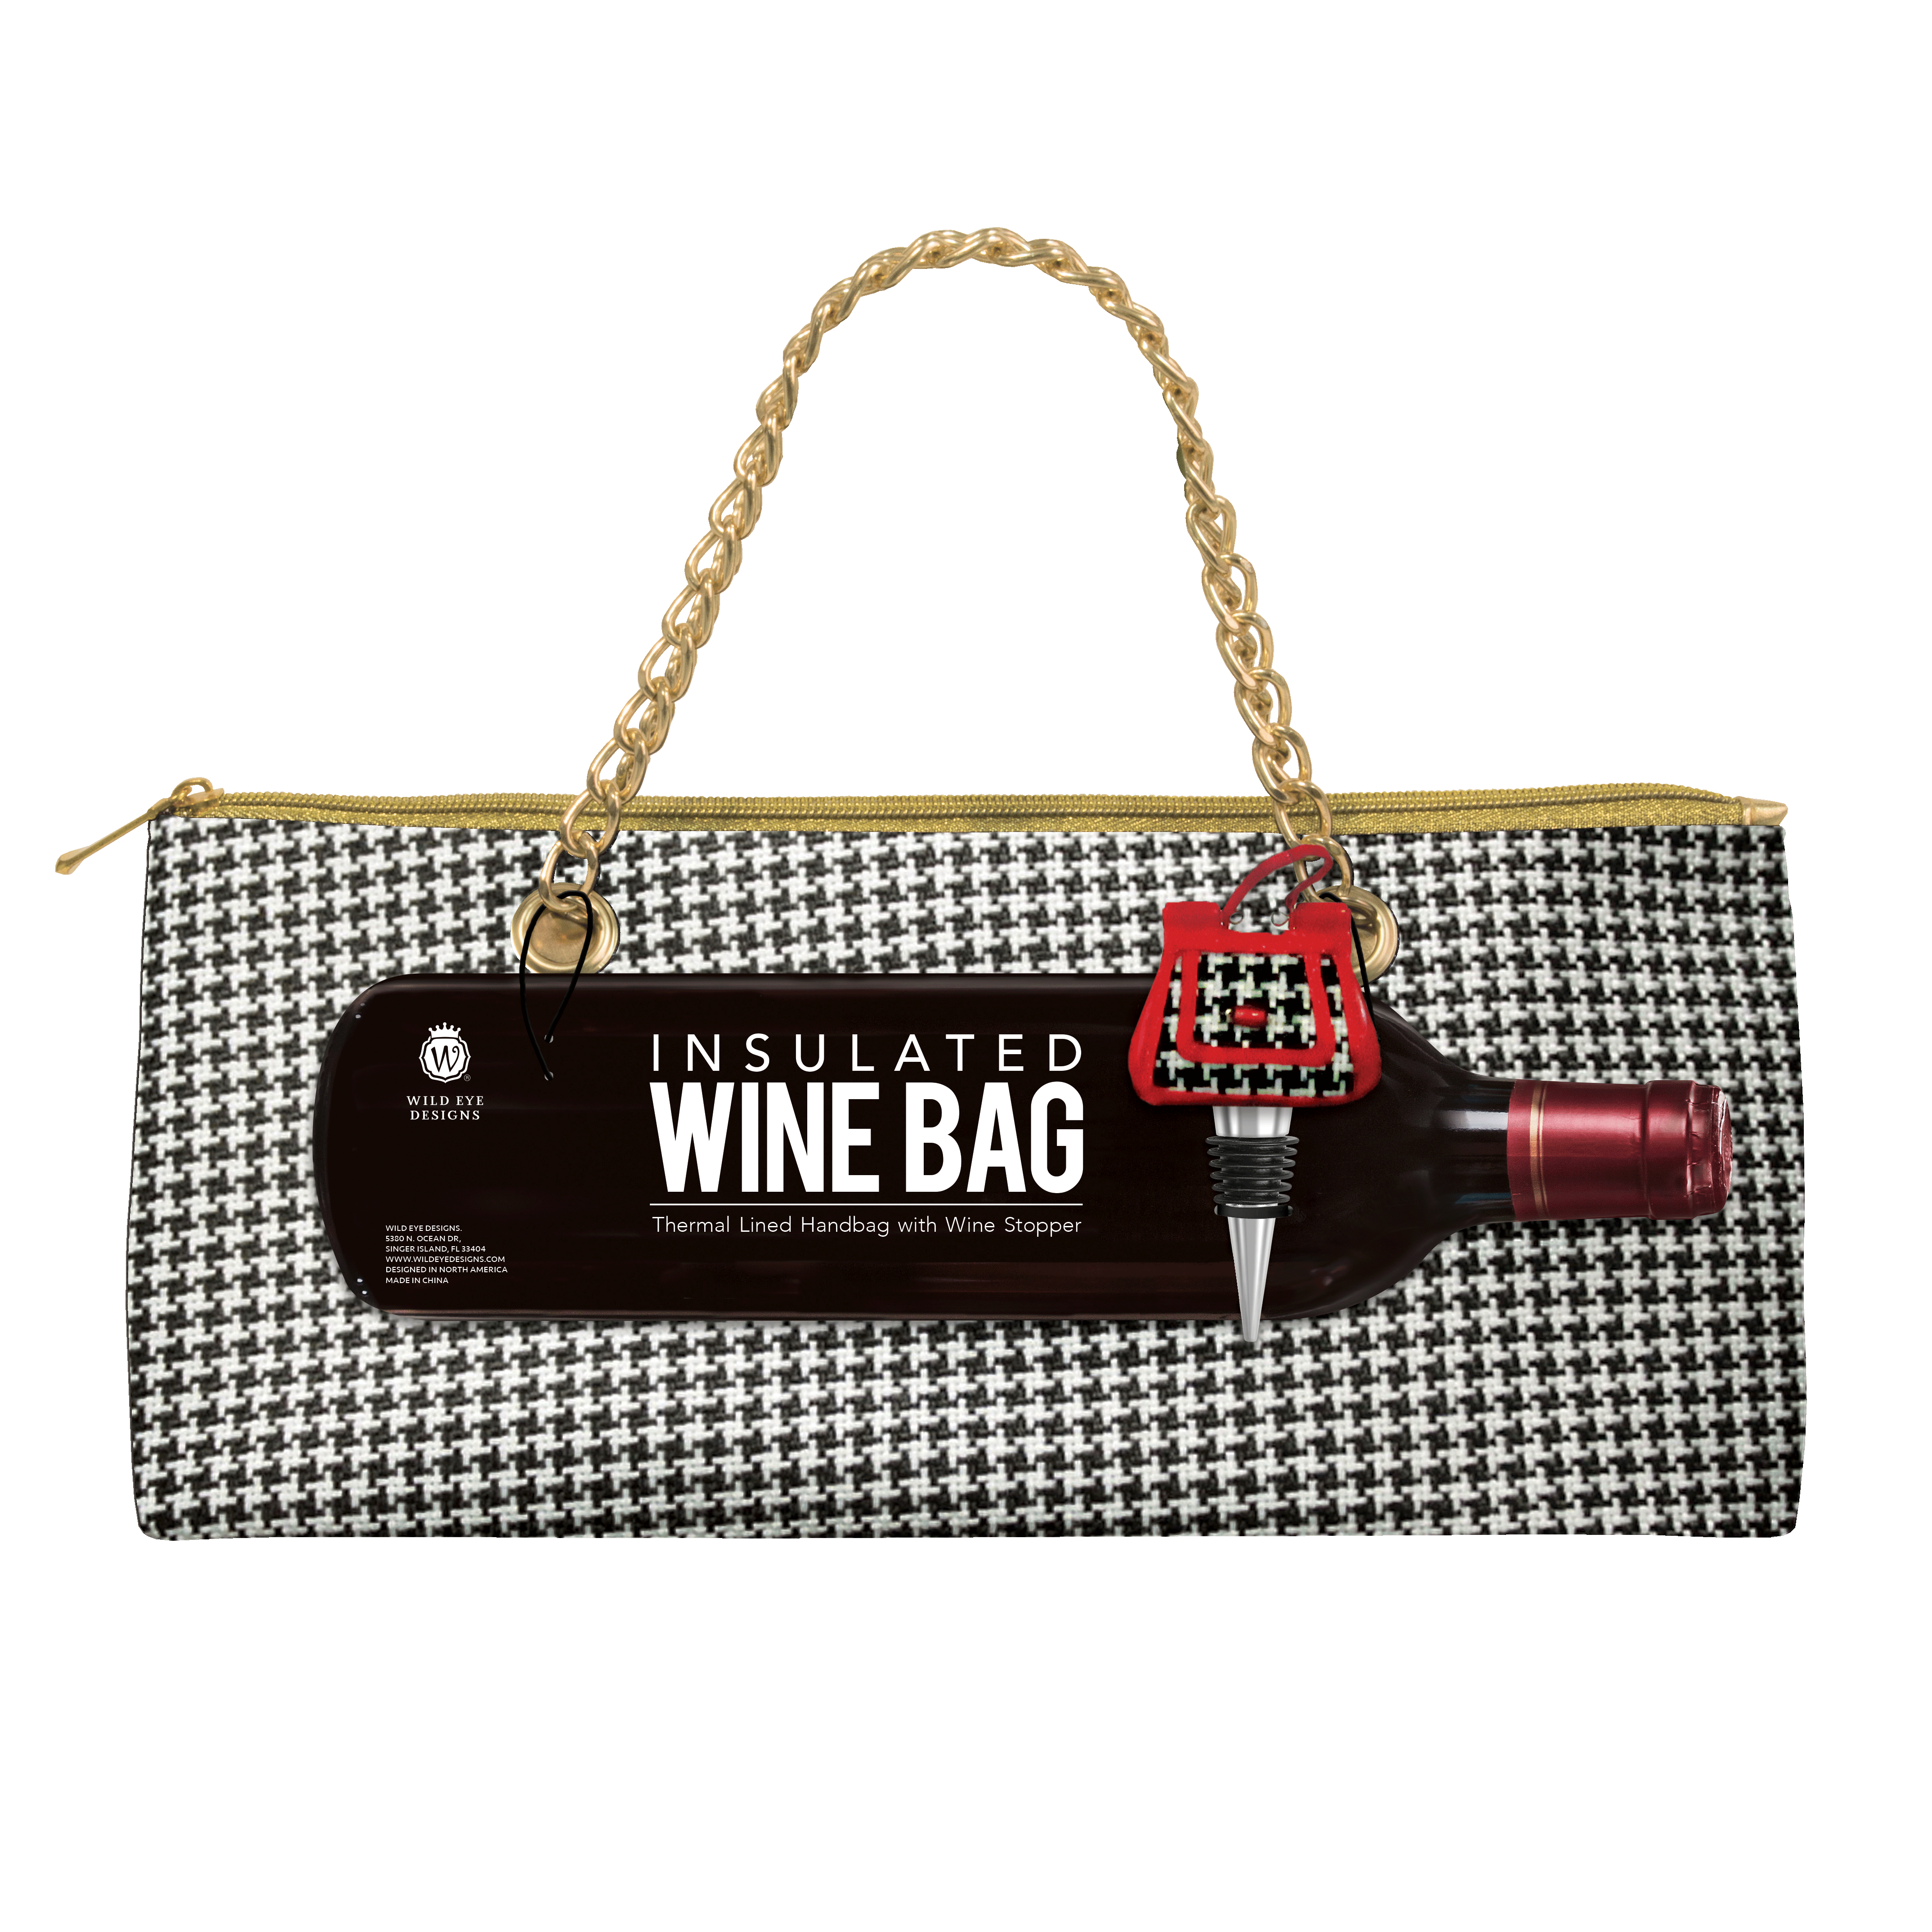 INSULATED WINE BAG S/2, WHITE & BLACK CHECK, PURSE